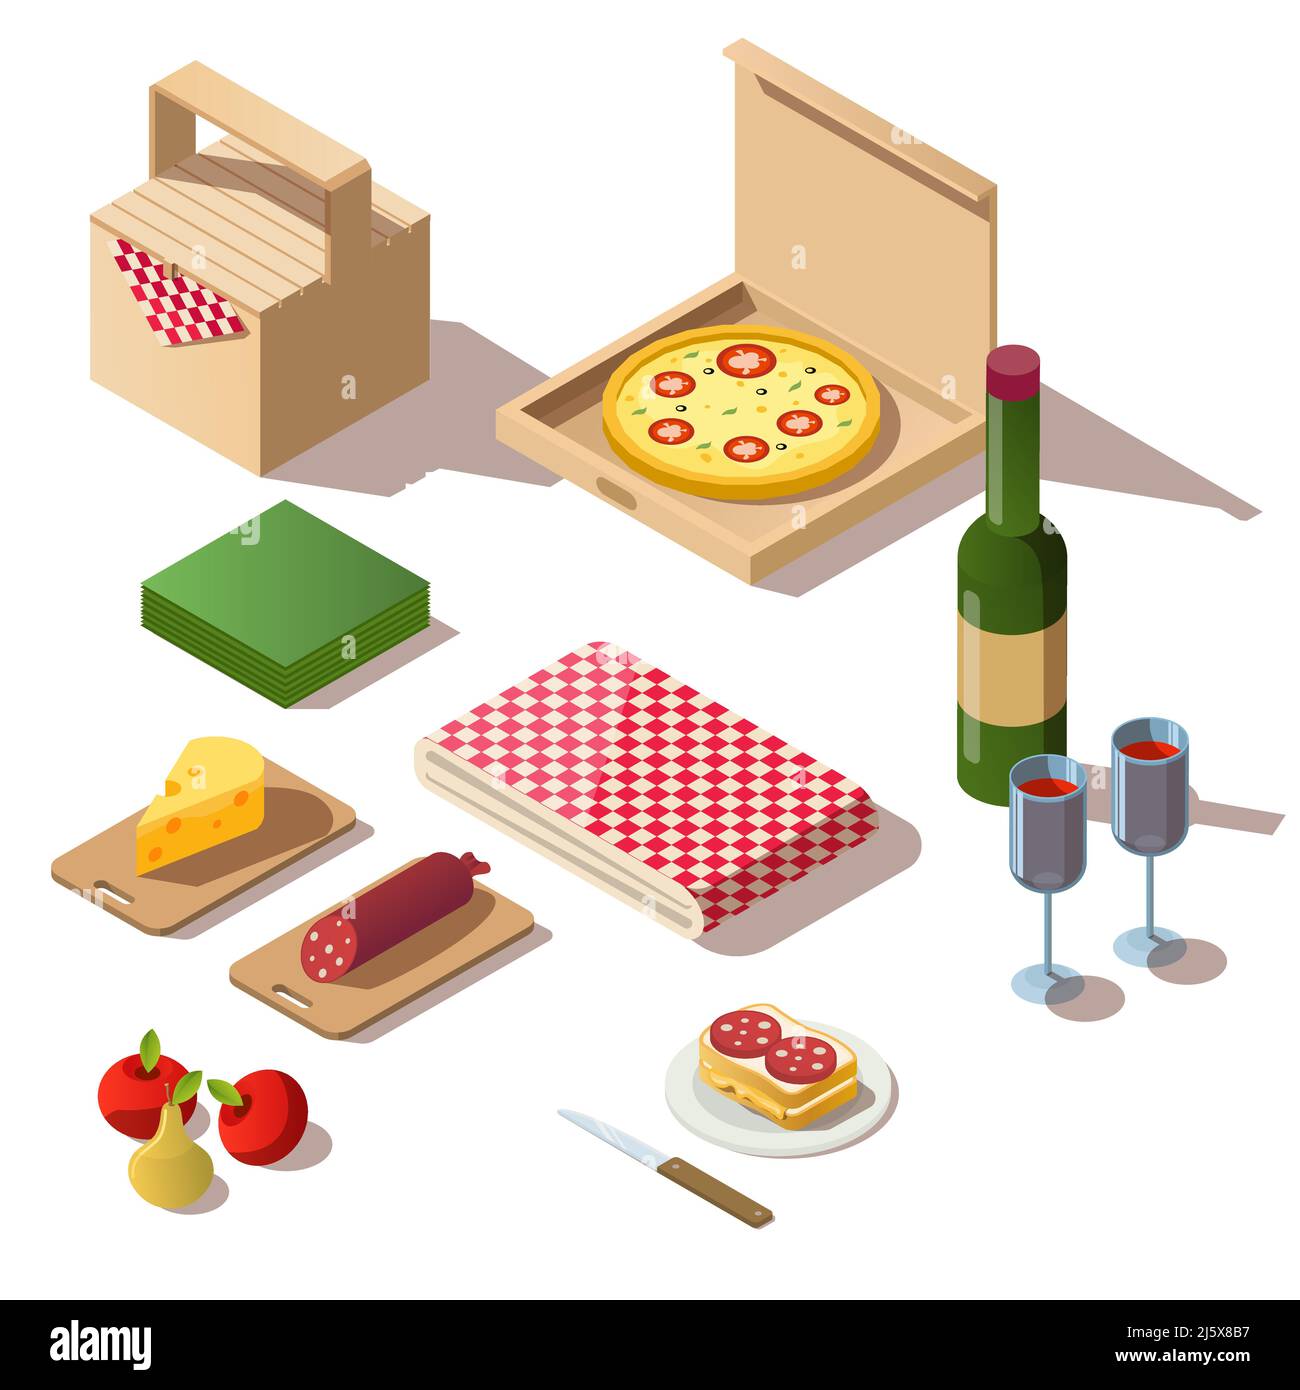 Isometrisches Picknick-Set mit Speisen, Pizzabox, Wein und Korb. Vector 3D Symbole von frischem Essen, Obst, Flasche mit Gläsern und Tischdecke für das Abendessen oder lu Stock Vektor